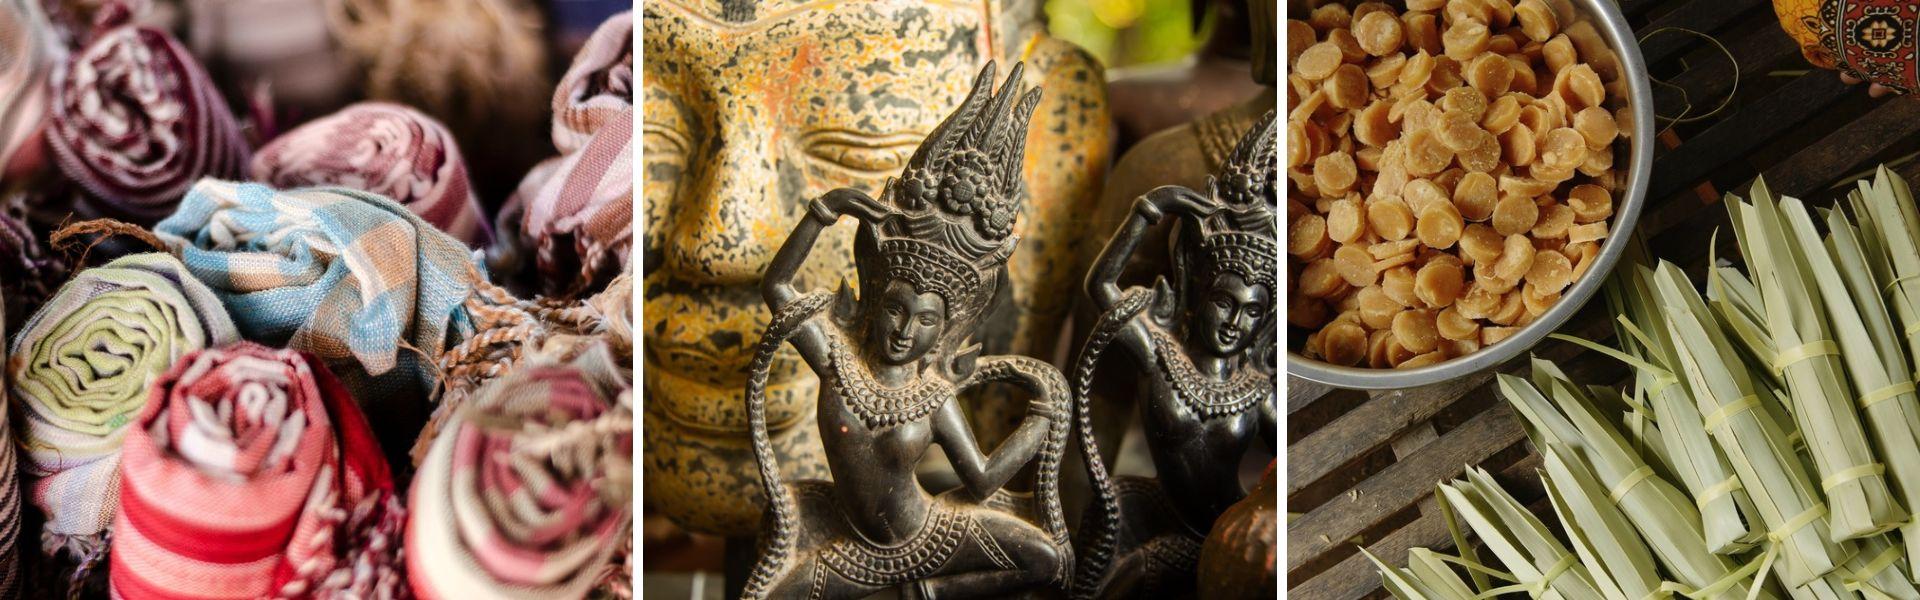 Top 09 des plus beaux souvenirs à acheter au Cambodge